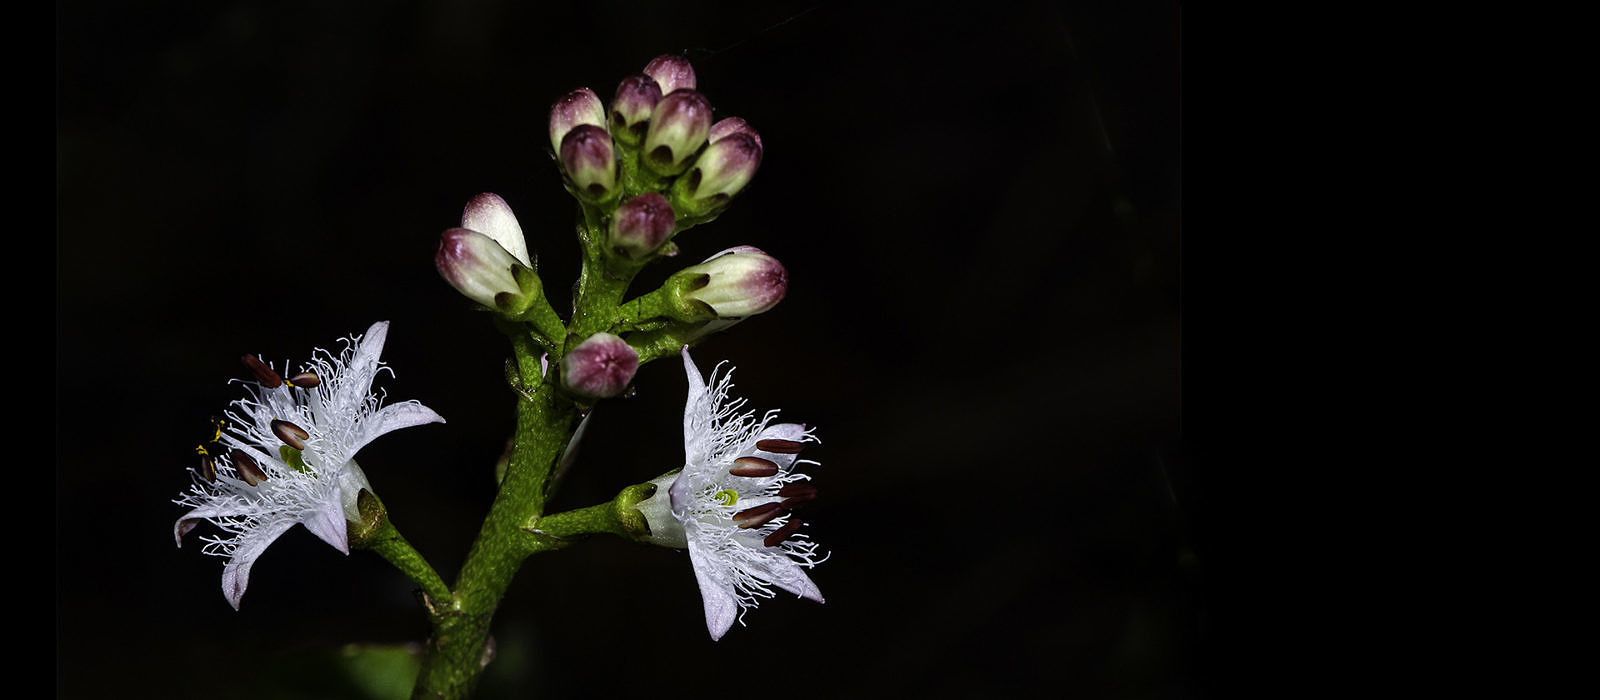 Bogbean (Menyanthes trifoliata) by Bryan Pfeiffer 